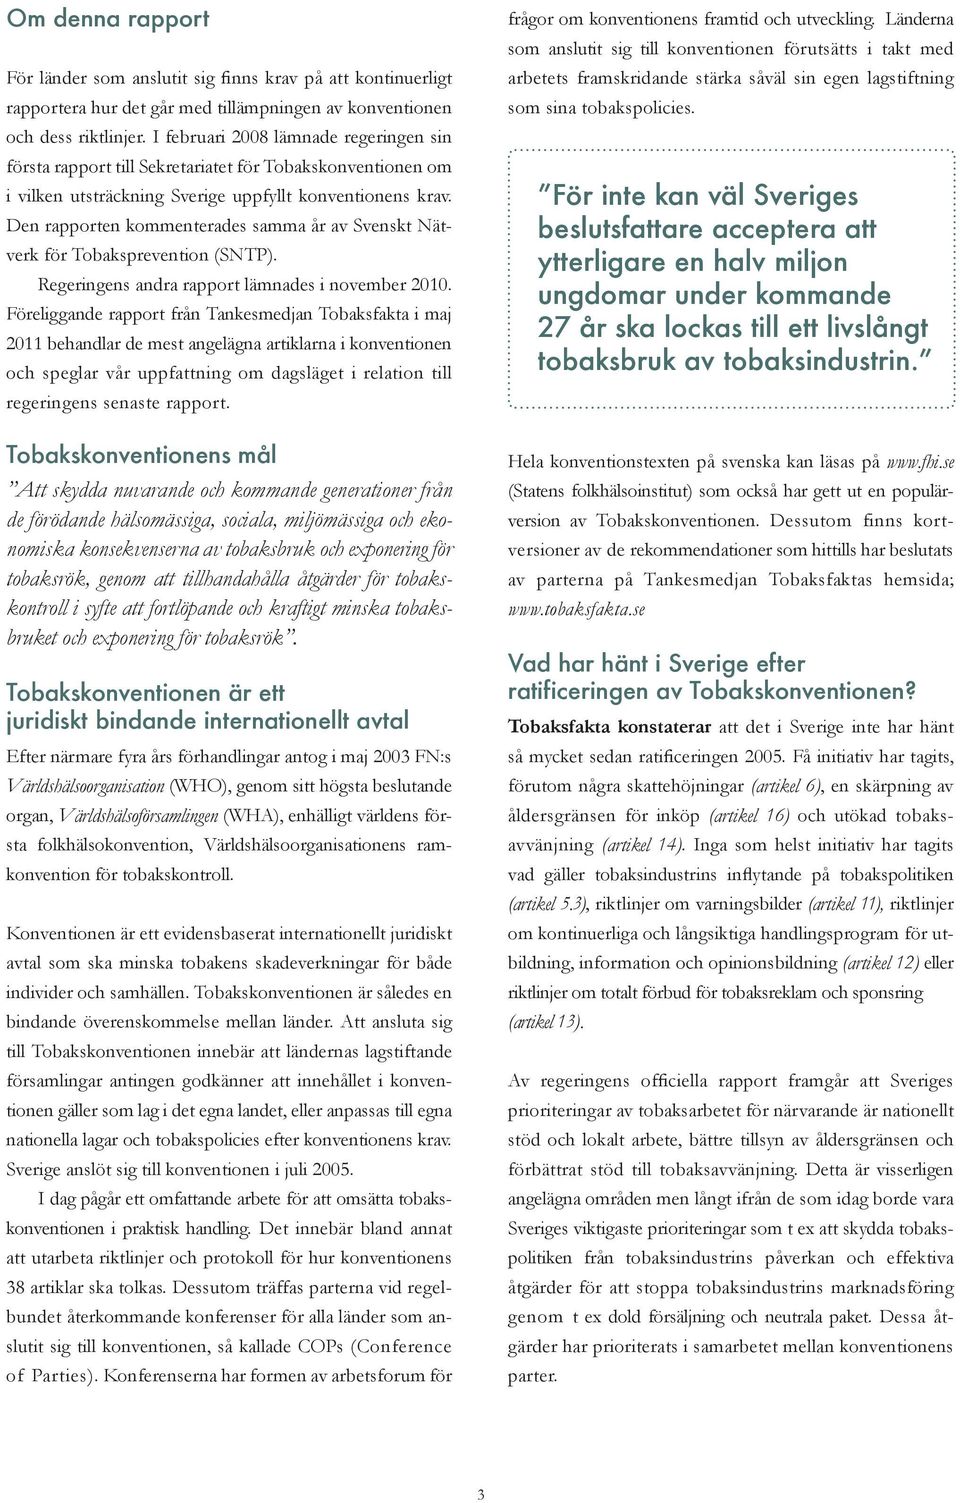 Den rapporten kommenterades samma år av Svenskt Nätverk för Tobaksprevention (SNTP). Regeringens andra rapport lämnades i november 2010.